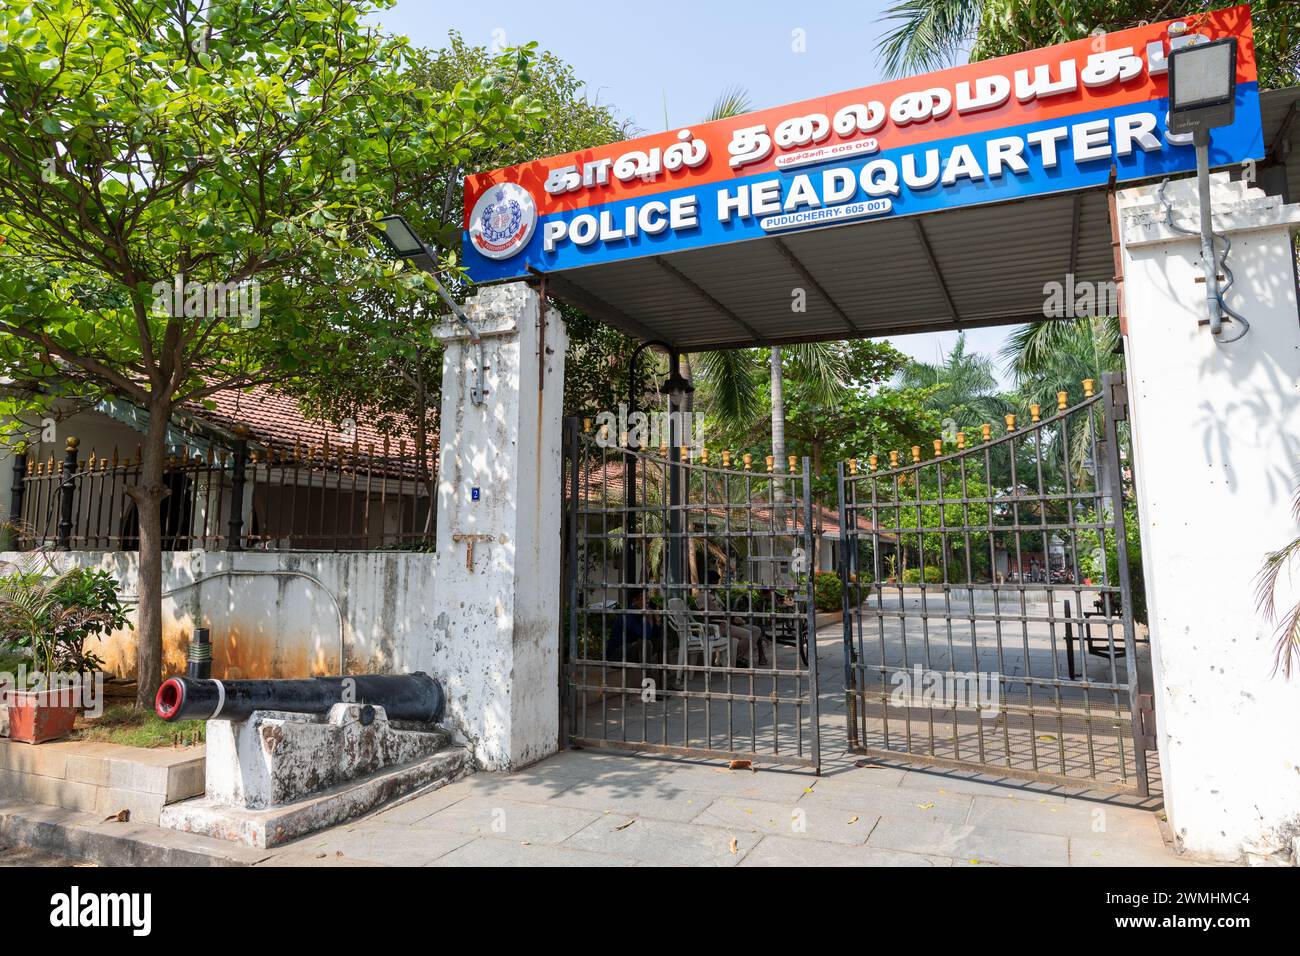 Police Headquarters Pondicherry India Stock Photo